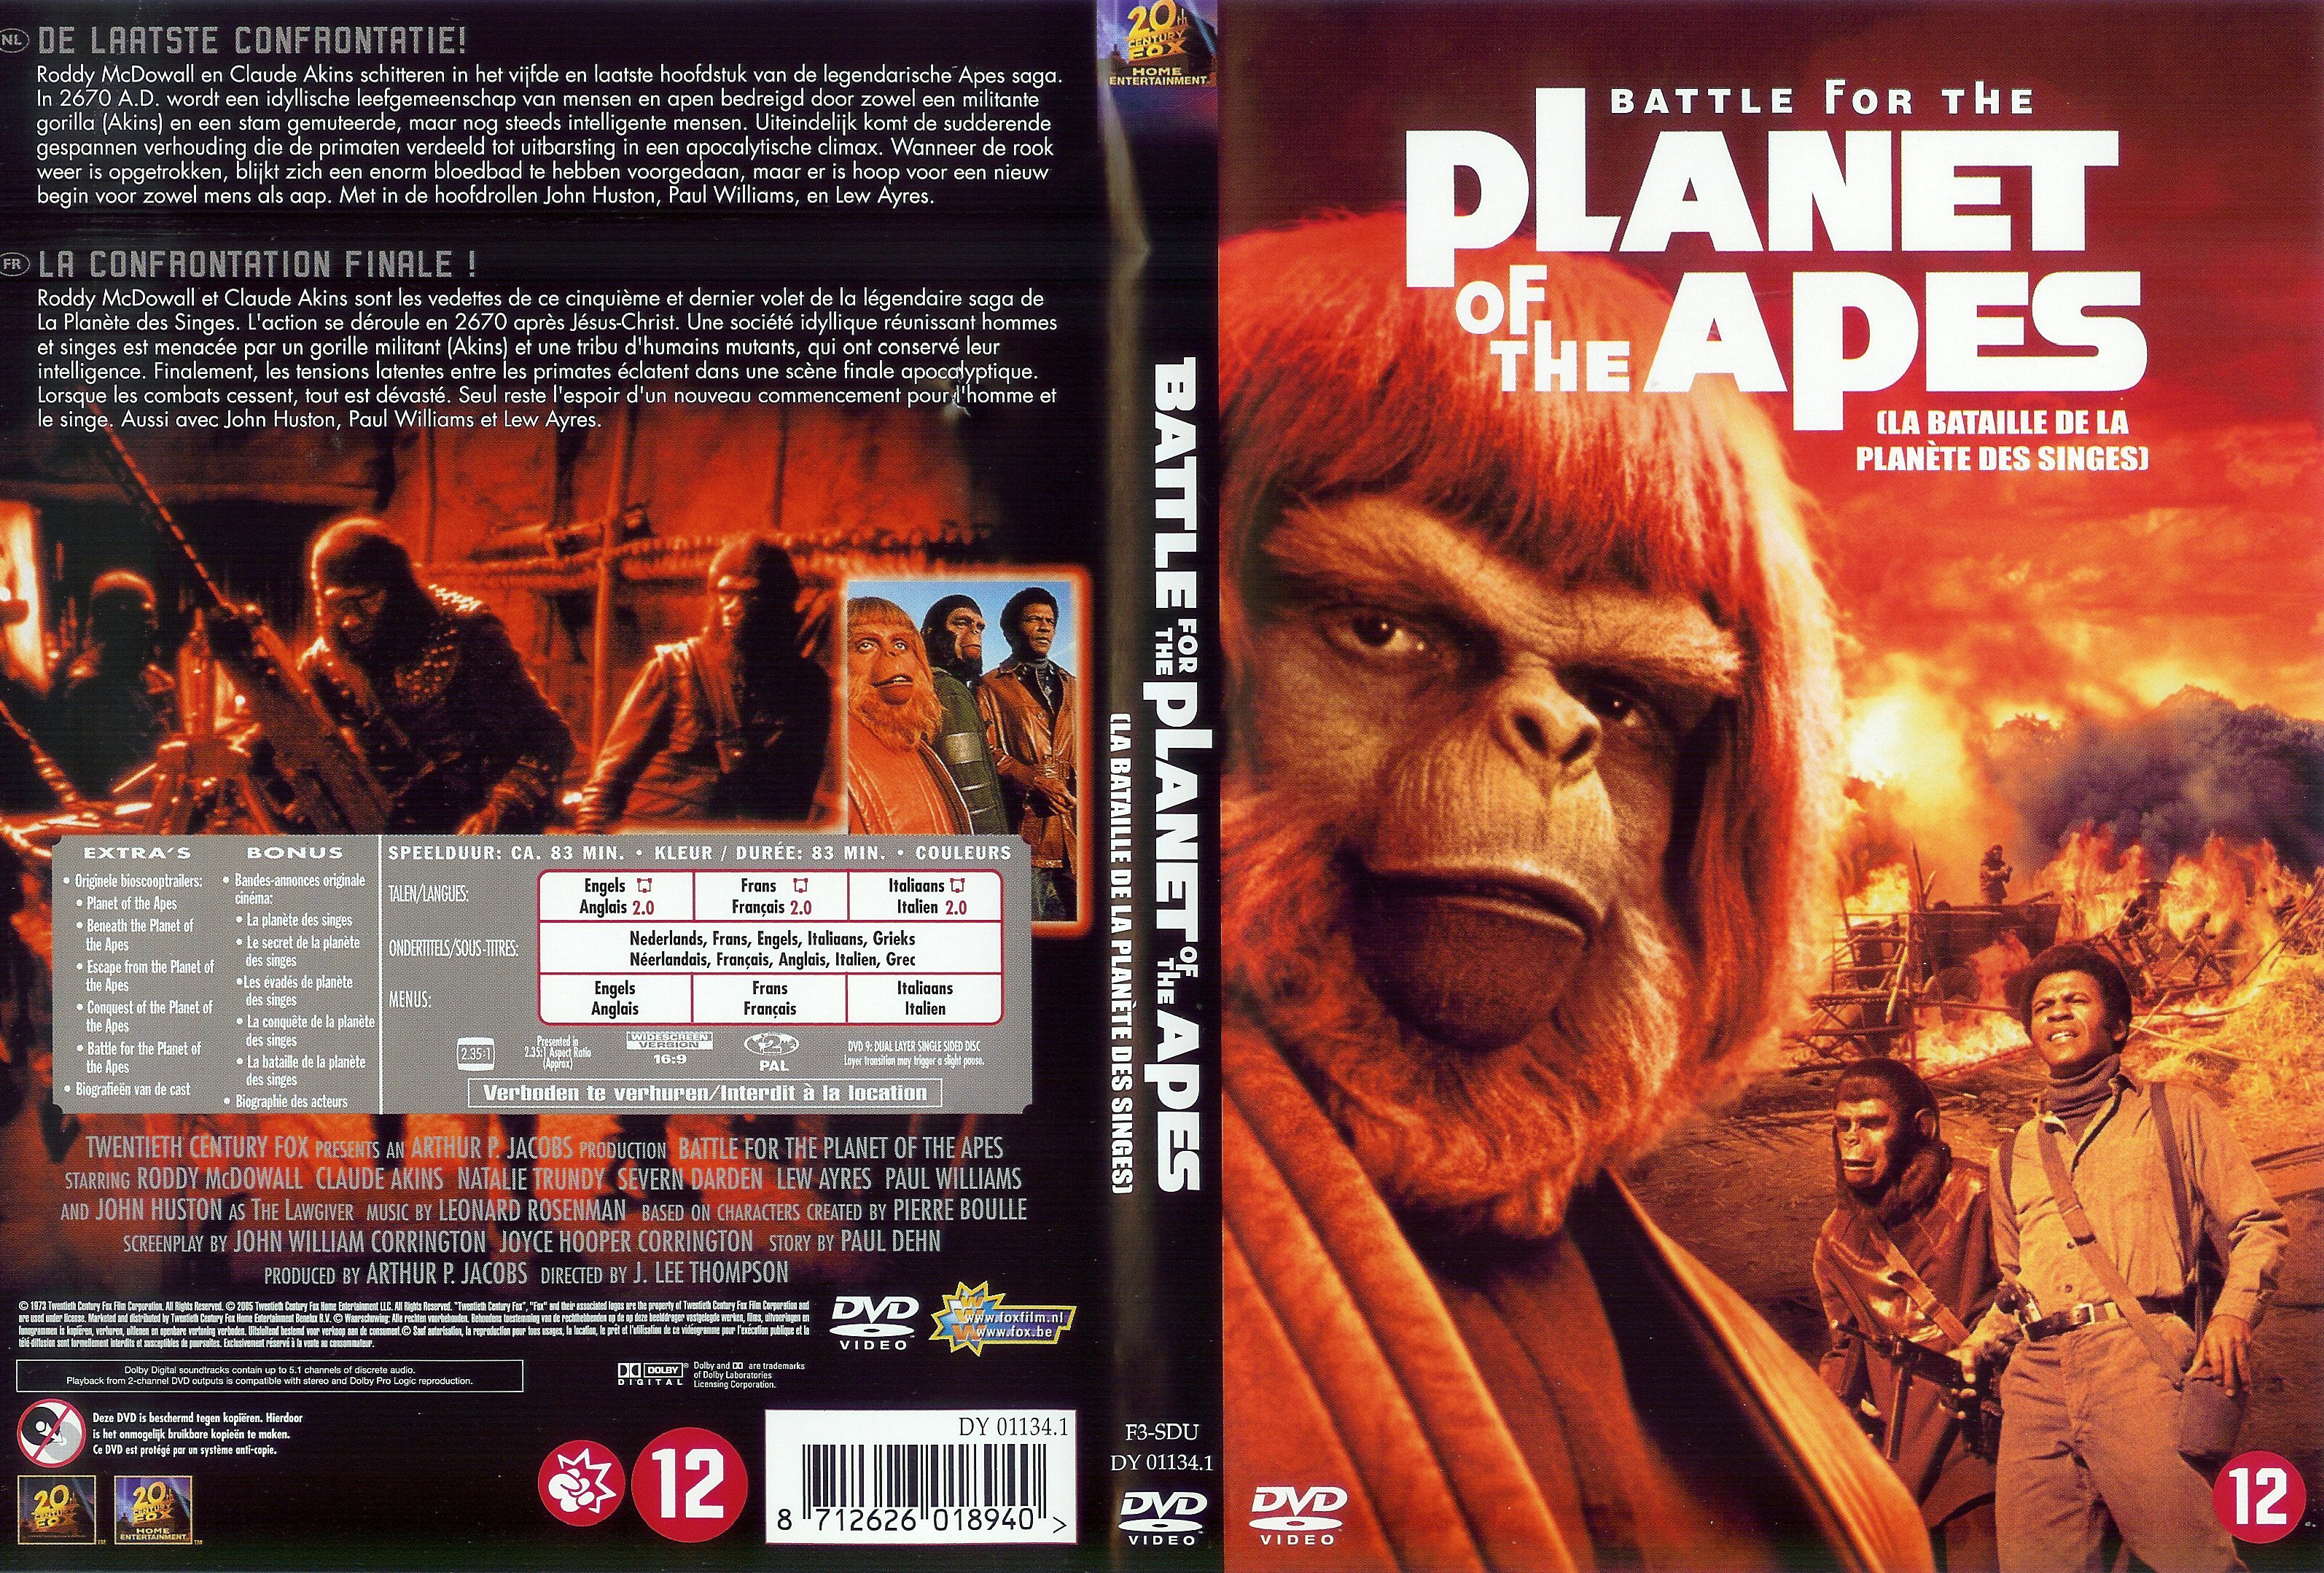 Jaquette DVD La bataille de la planete des singes